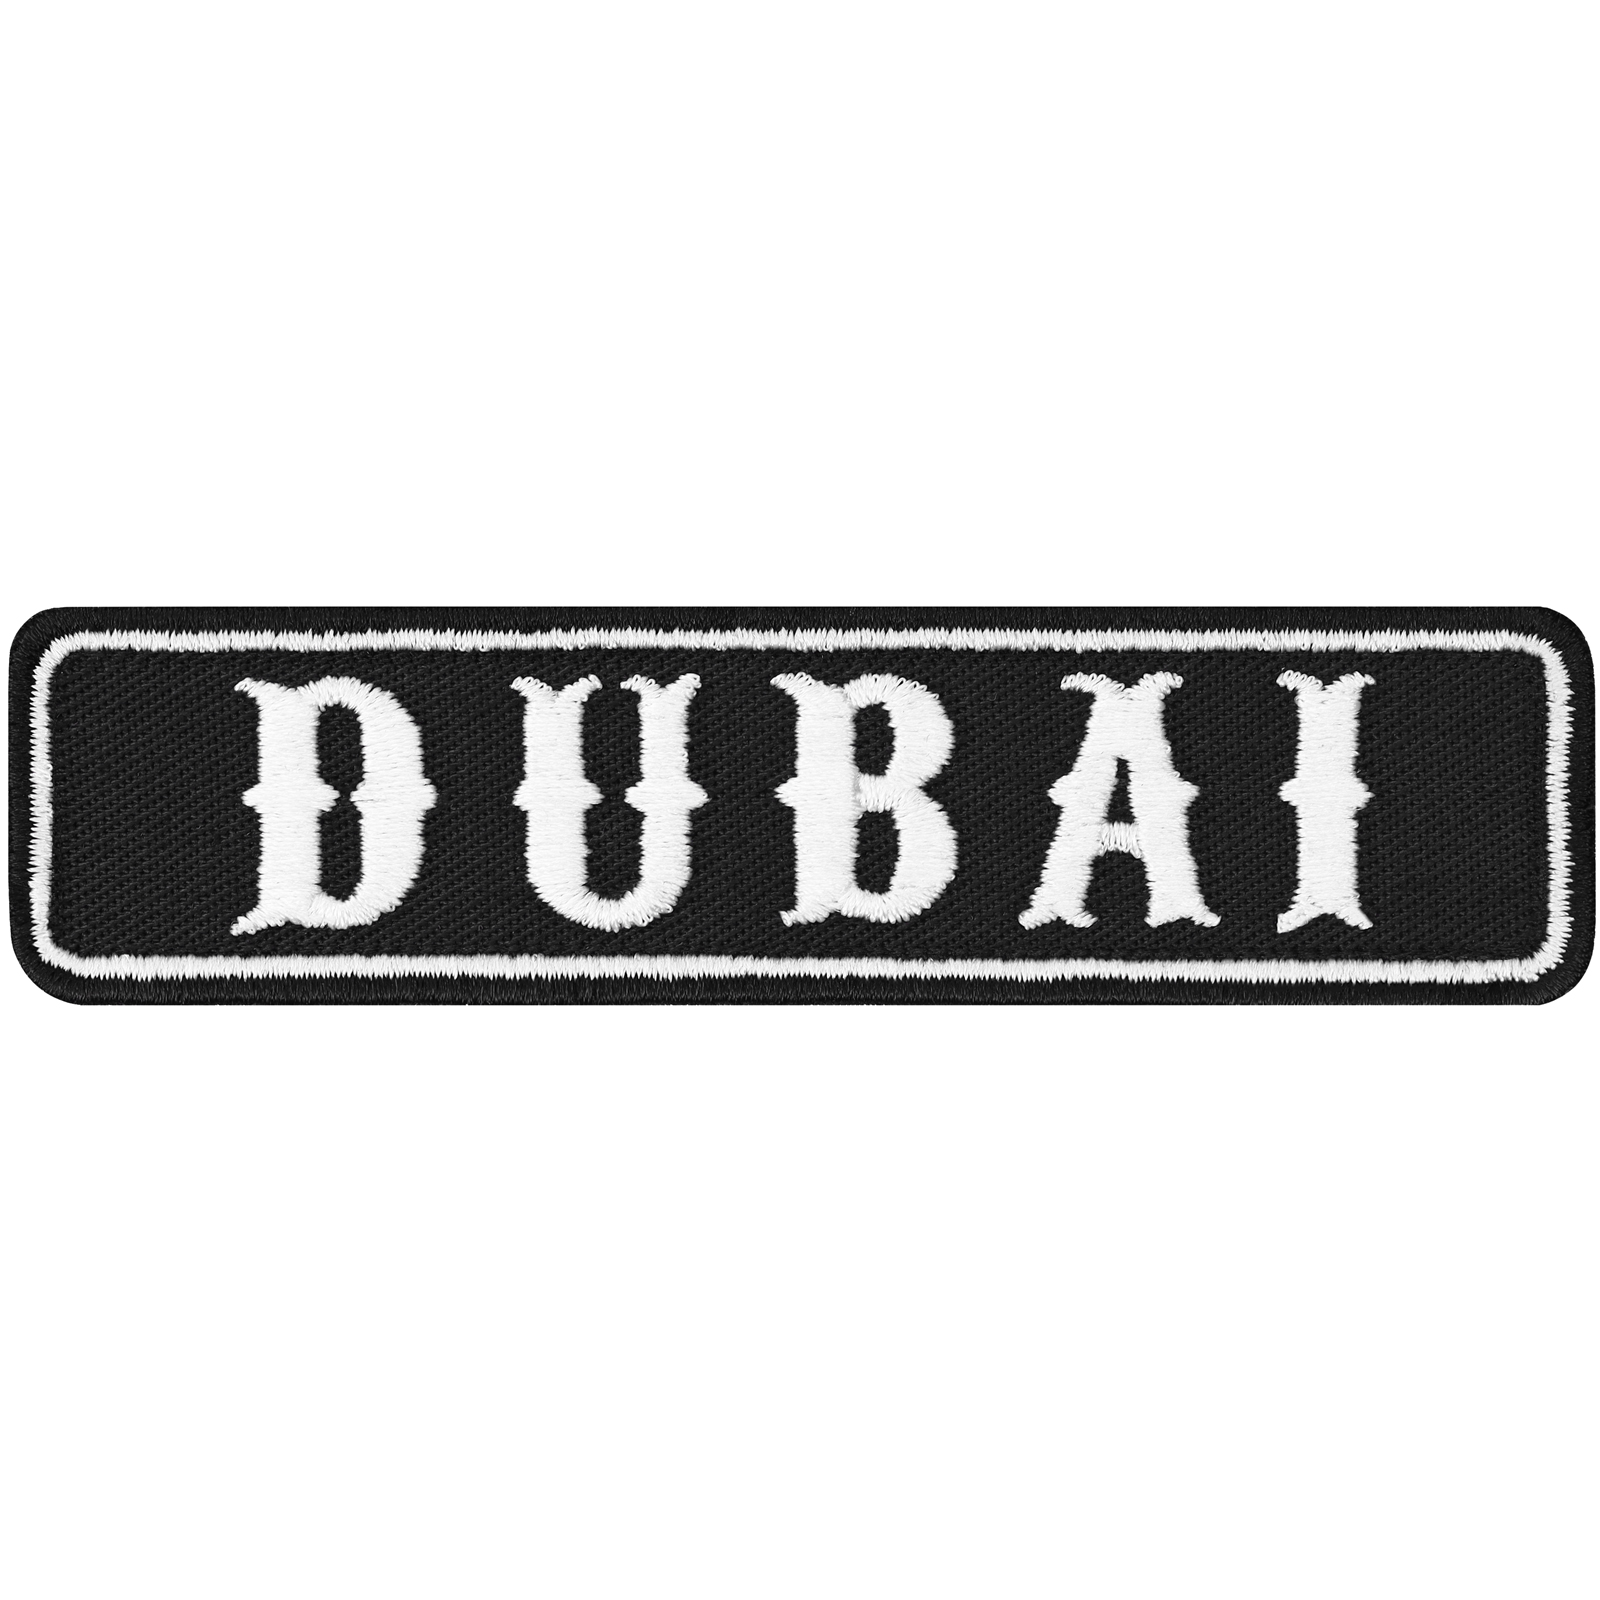 Dubai - Patch